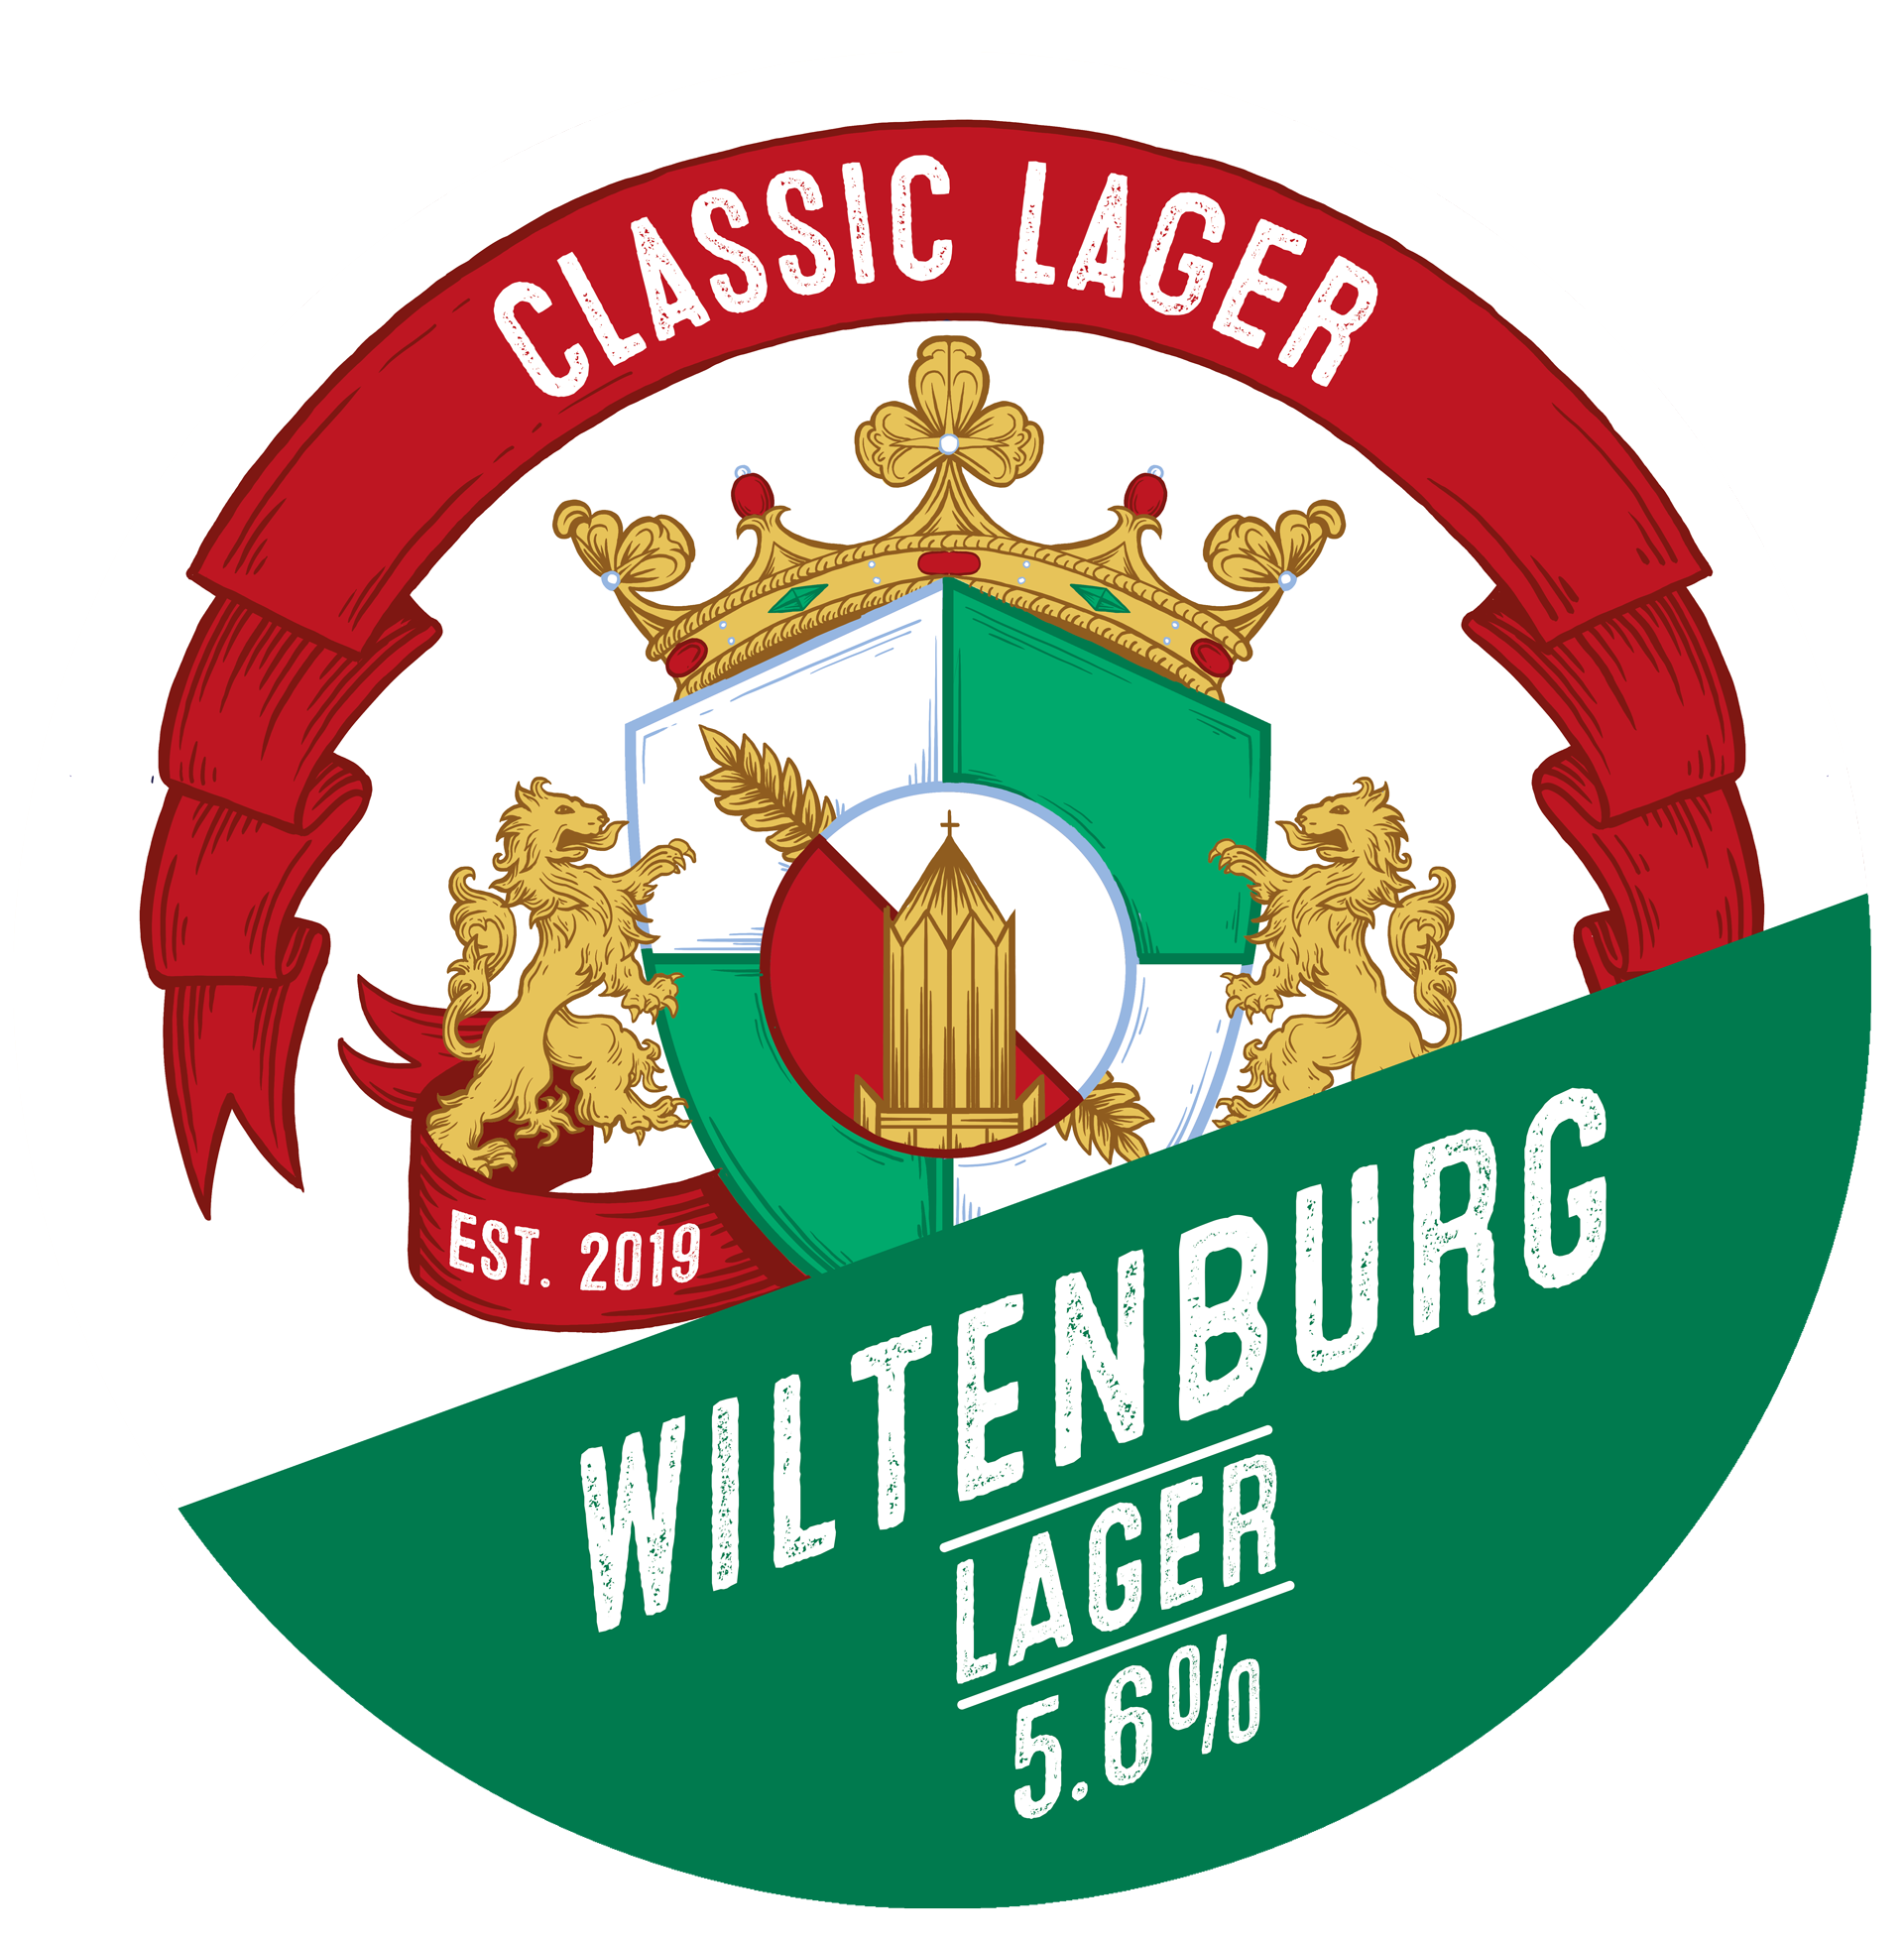 Wiltenburg Lager